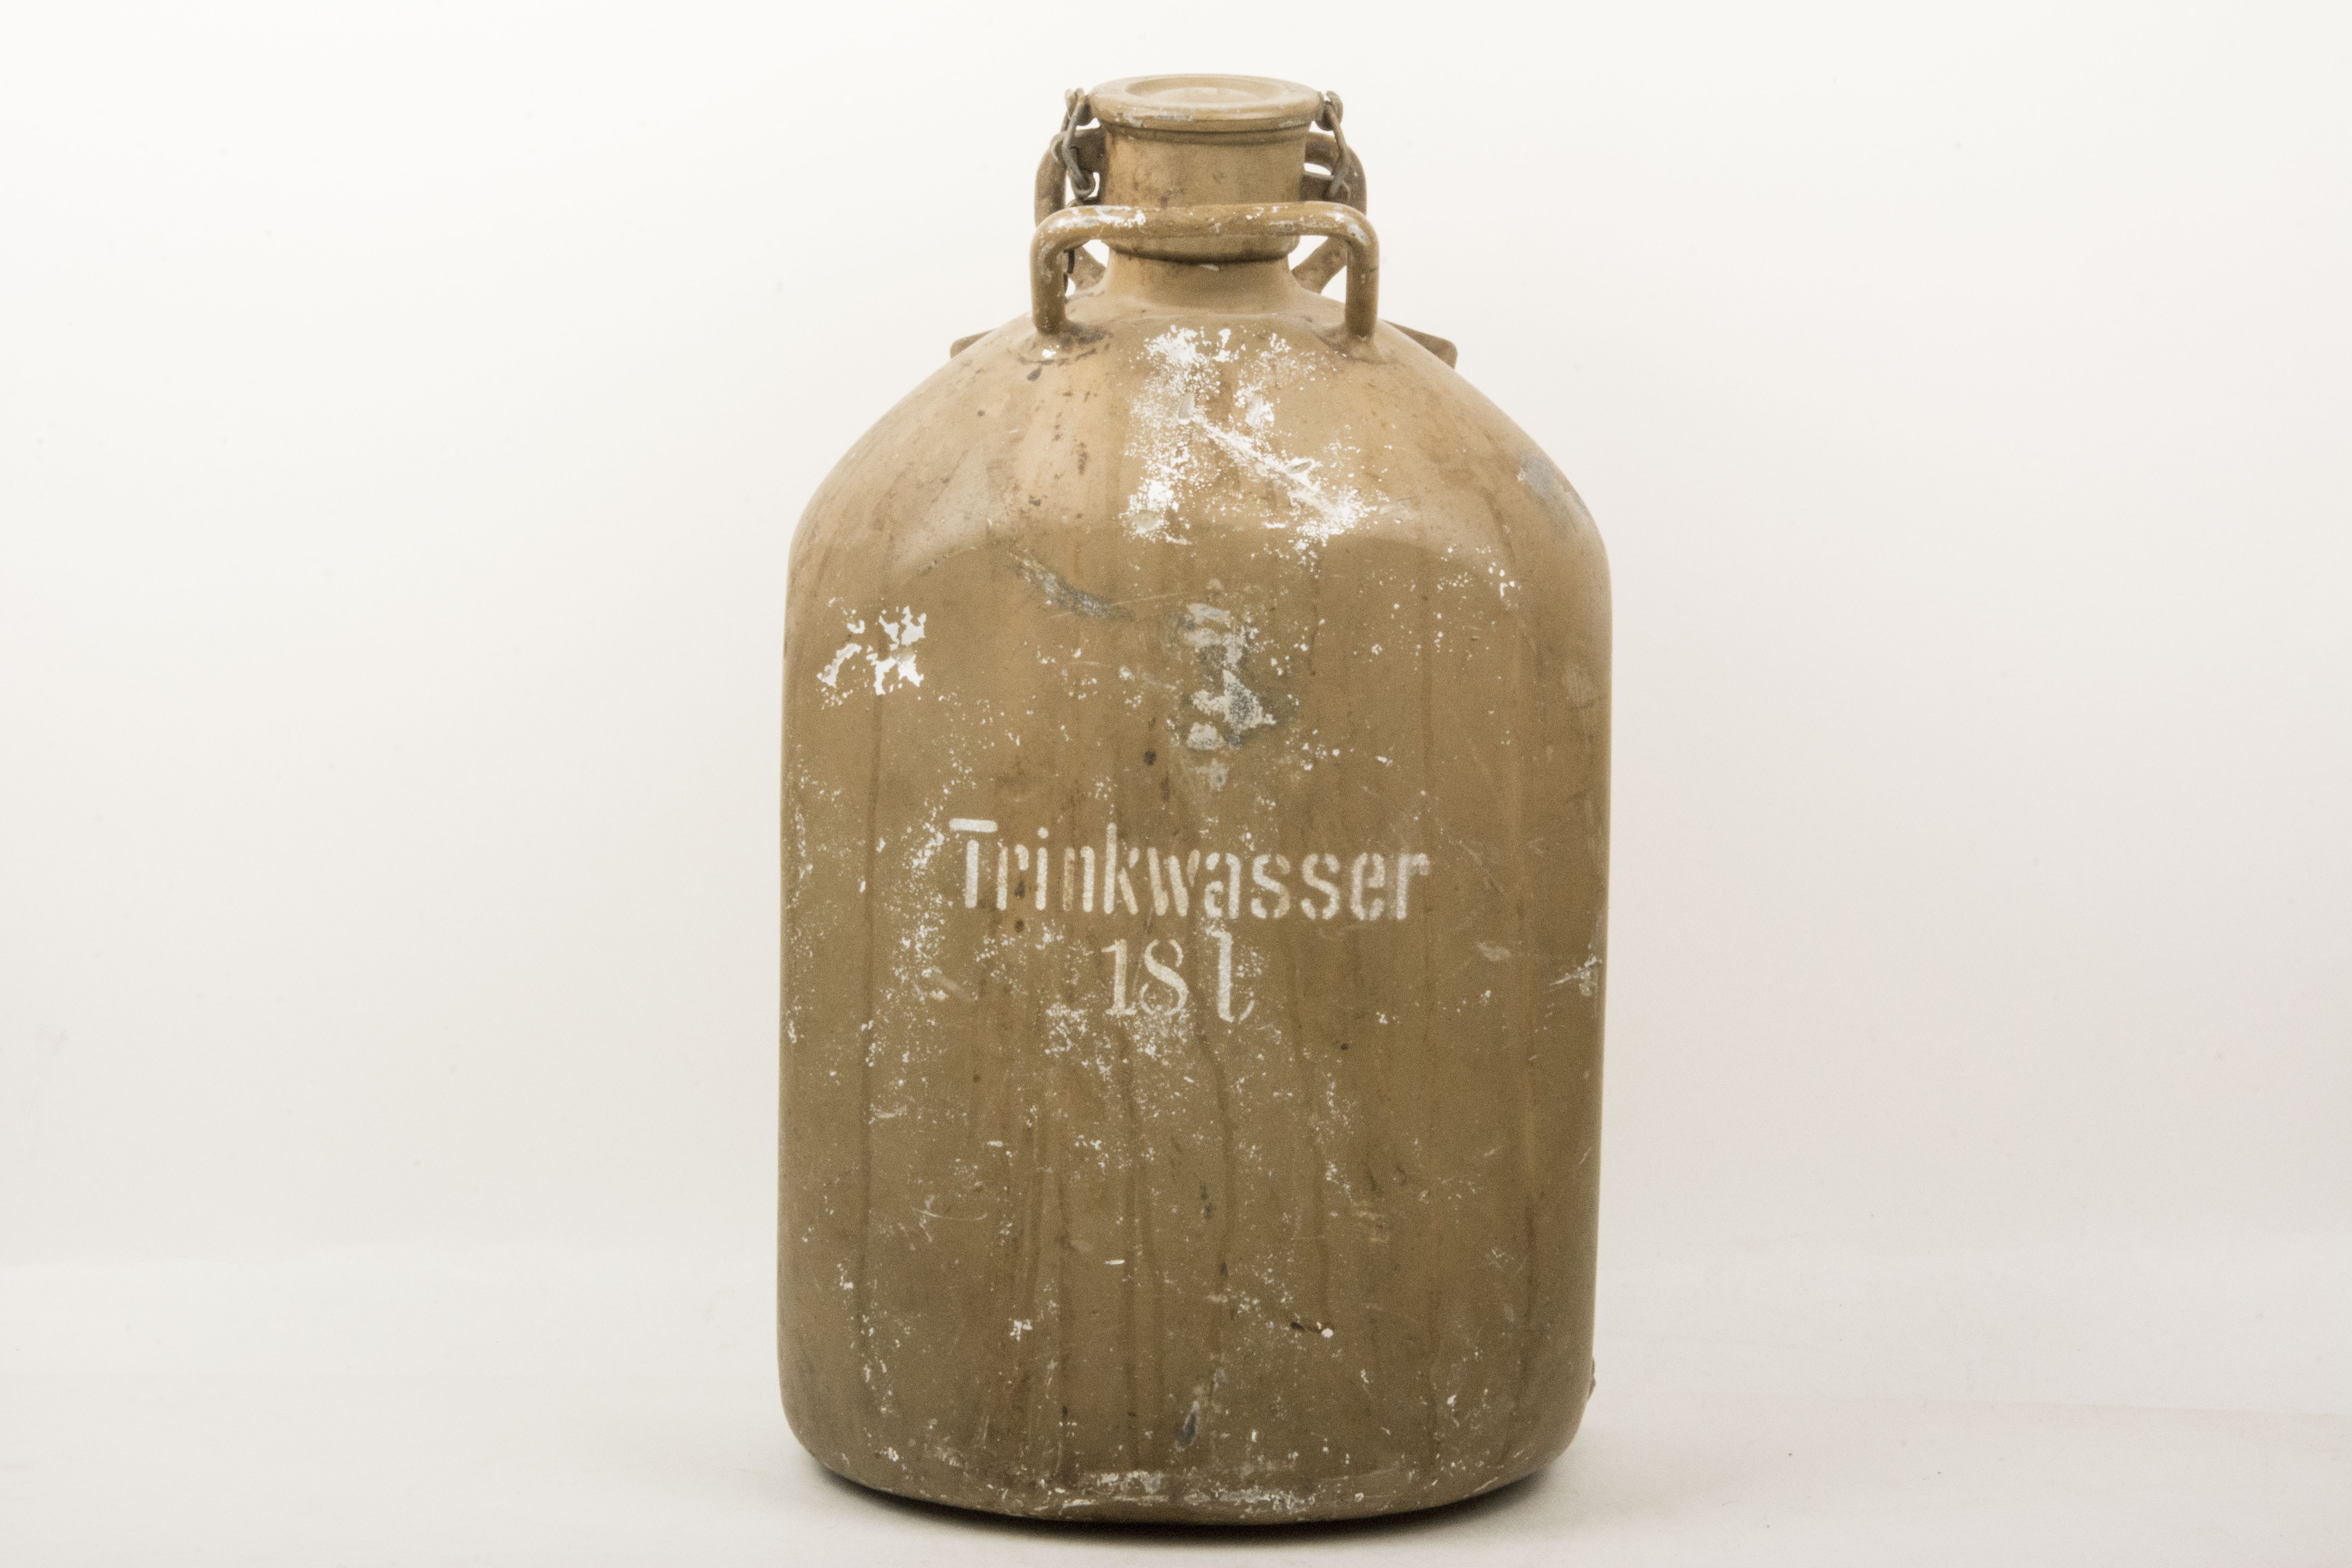 18 liter Trinkwasser water canister